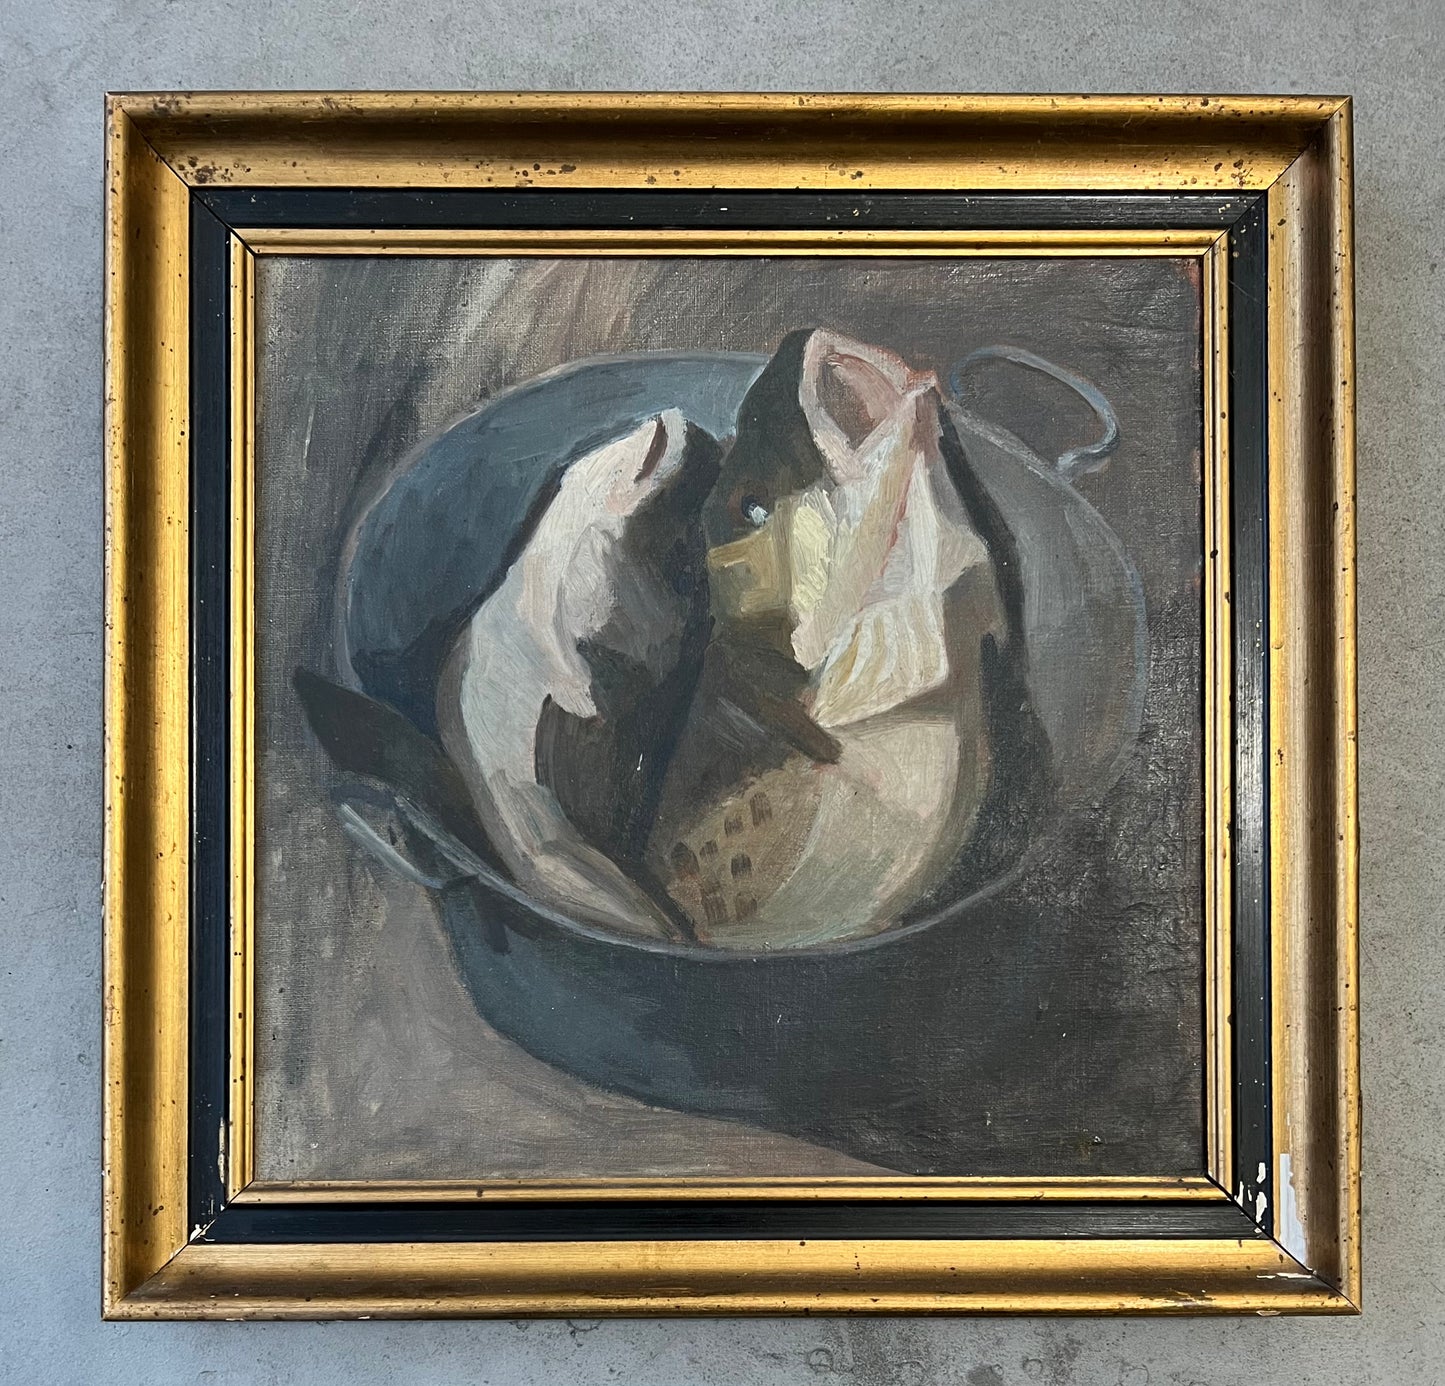 Majsa Bredsdorff. Cod fish in a pot, 1910/20's